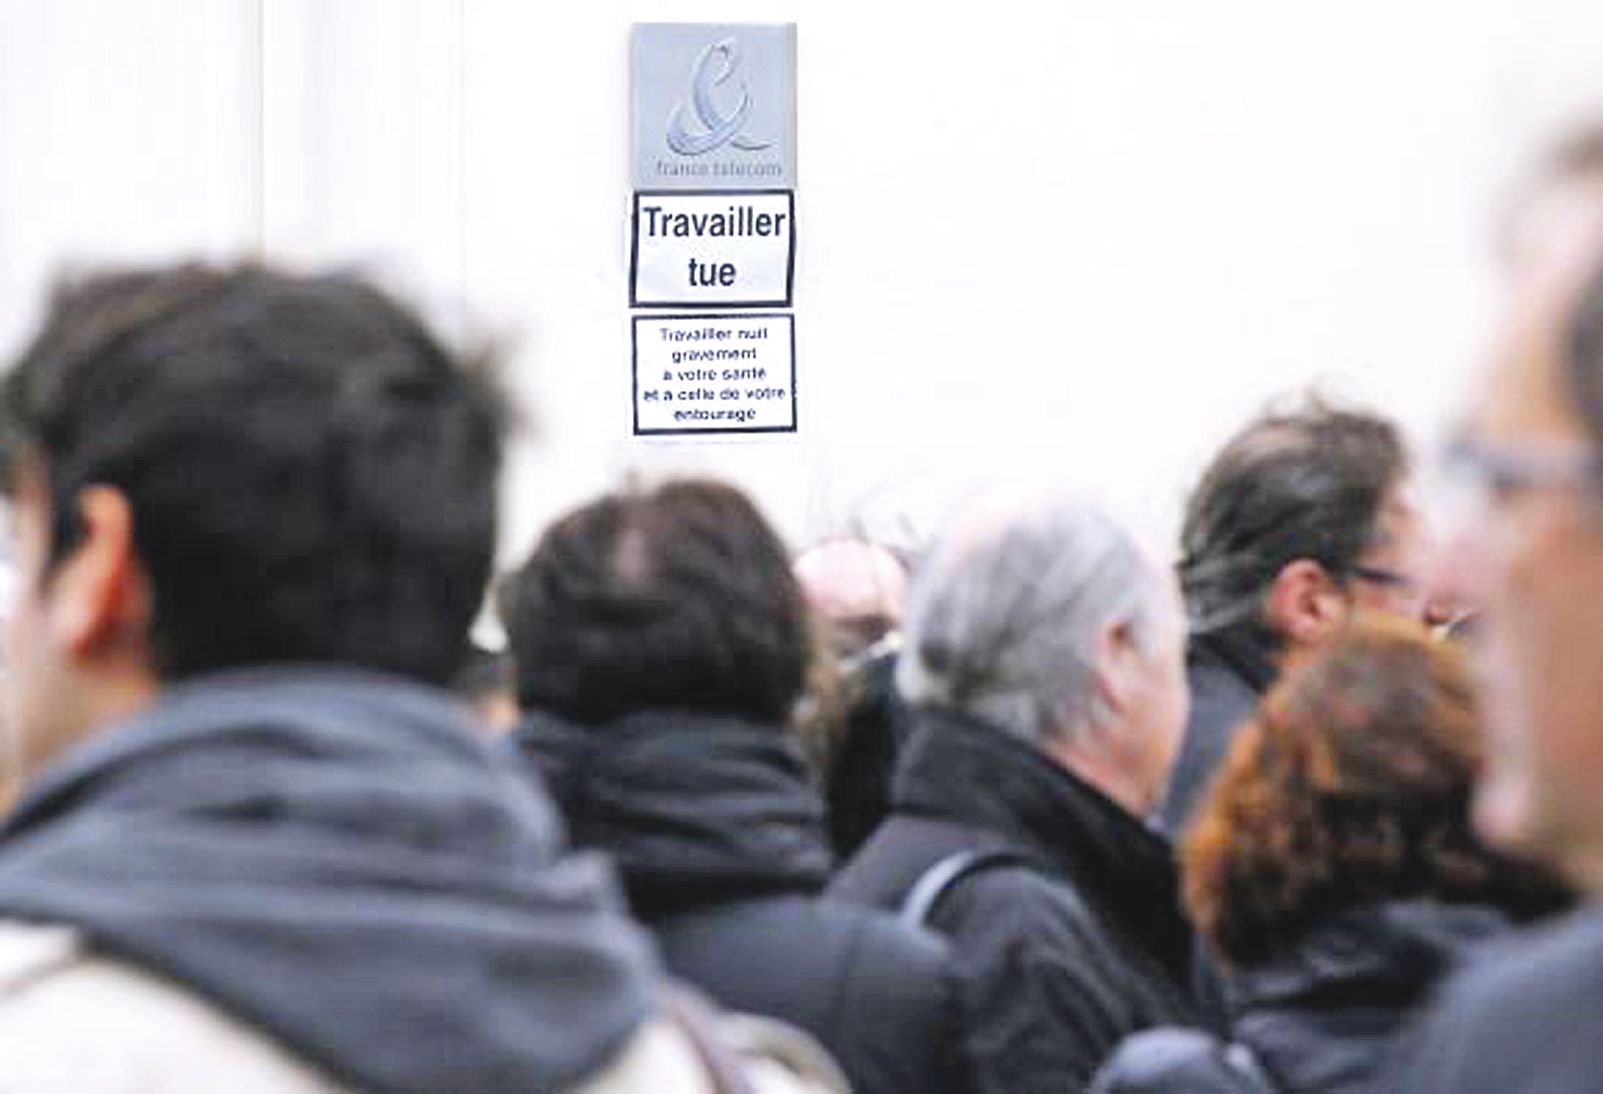 Des salariés de France Télécom s’étaient rassemblés le 26 avril 2012 devant la direction de l’entreprise à Mérignac, à la mémoire d’un de leur collègue qui s’était immolé par le feu.